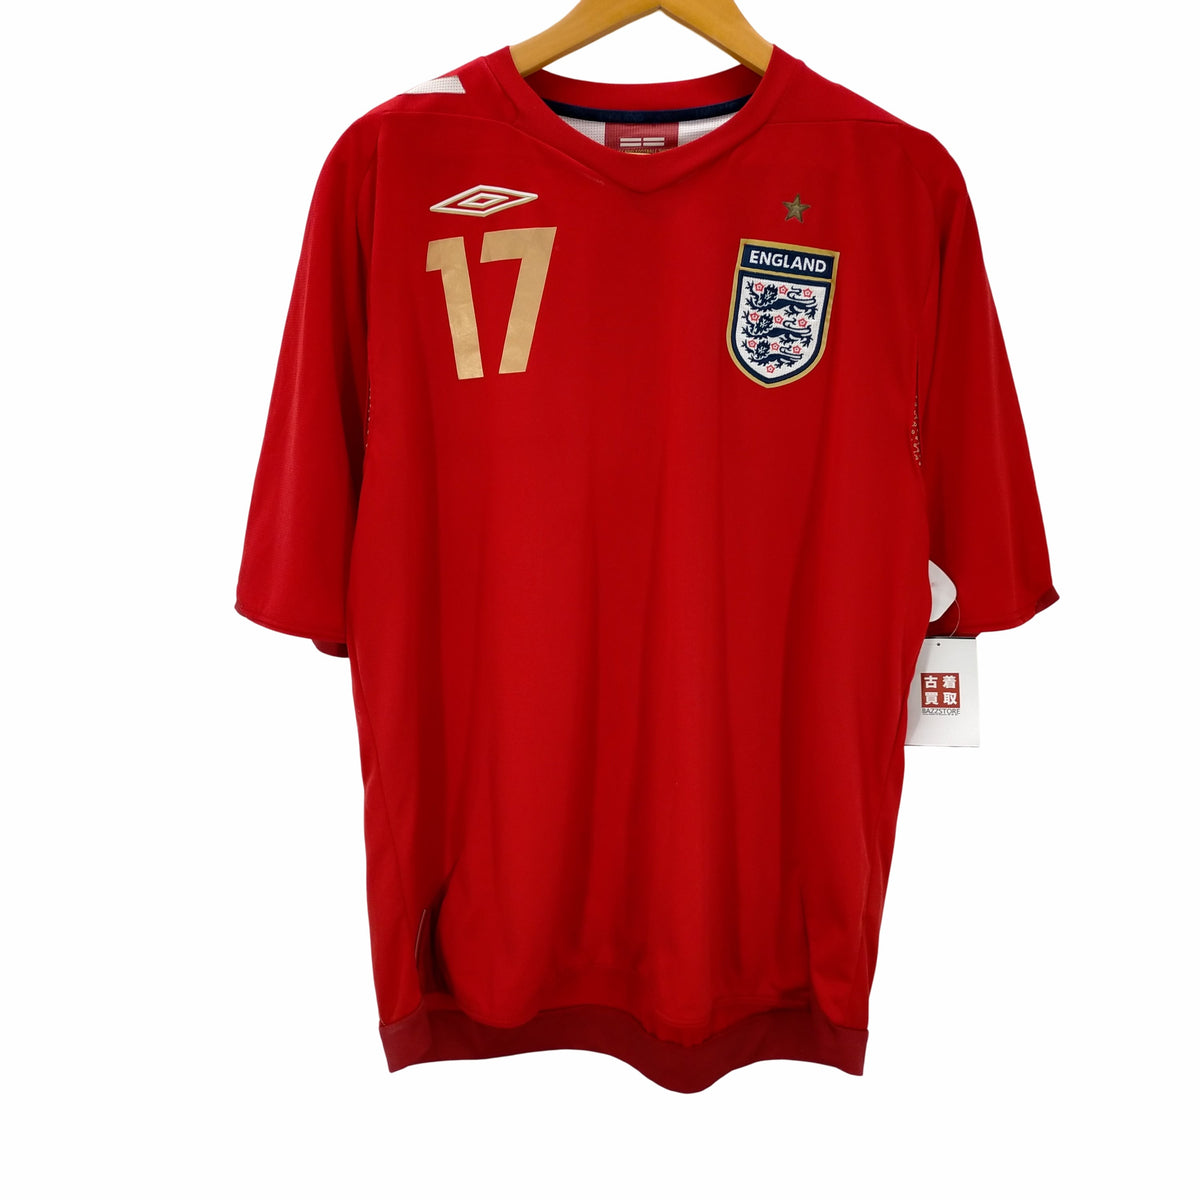 アンブロ UMBRO ENGLAND サッカーシャツ ユニフォーム メンズ import 